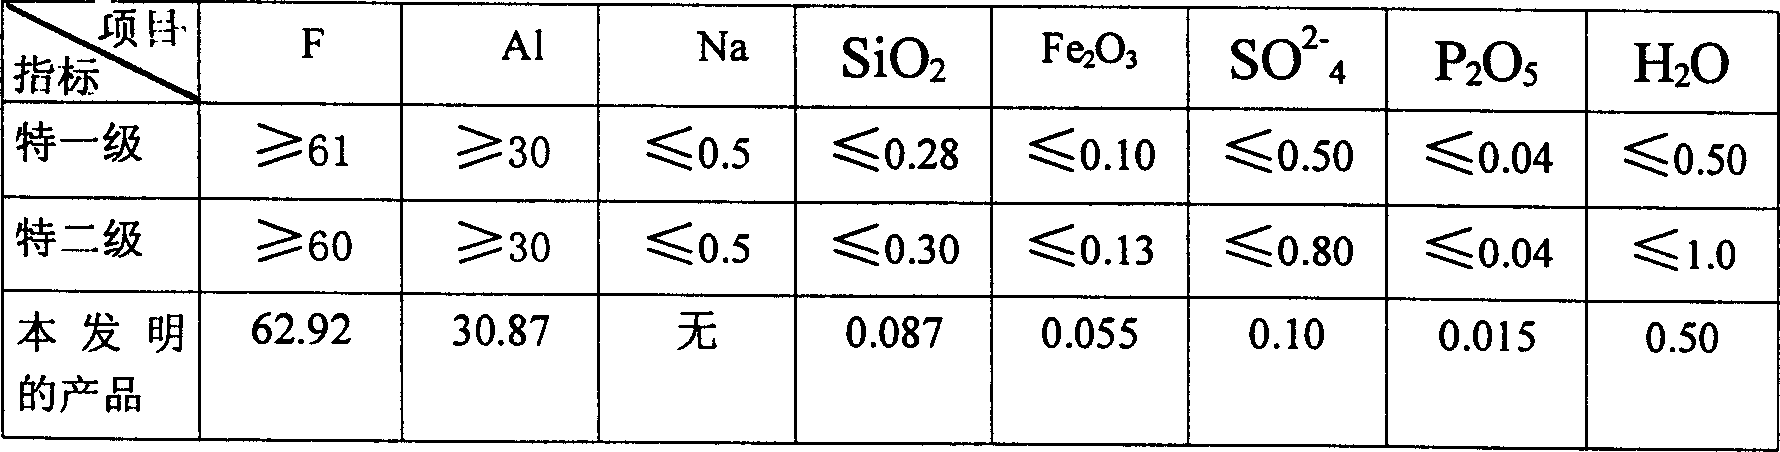 Method for producing aluminum fluoride